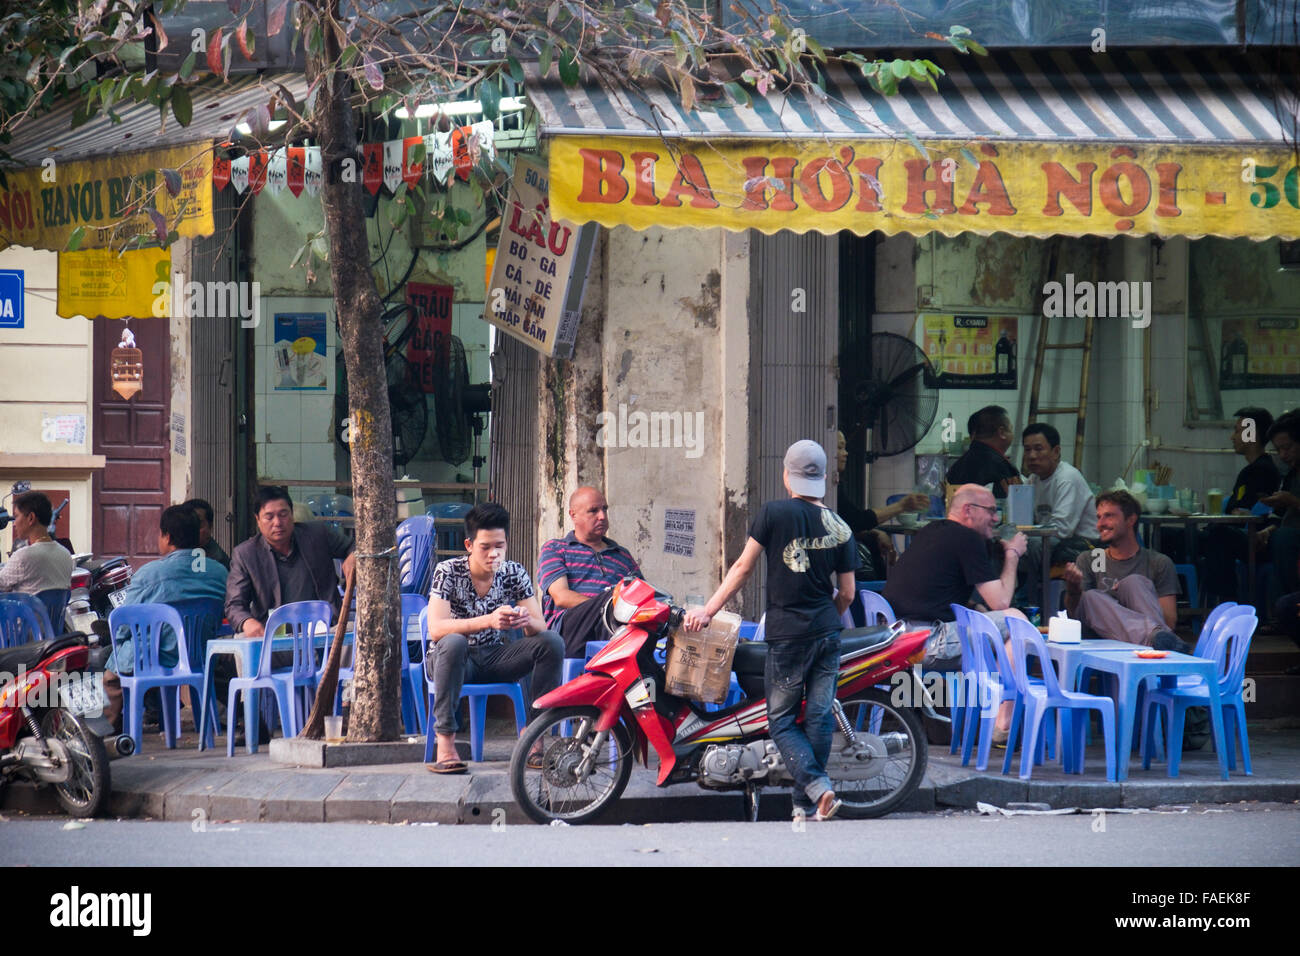 Les personnes qui boivent de la bière fraîche Bia Hoi (Bat) sur Dan Street, dans la vieille ville d'Hanoi Banque D'Images